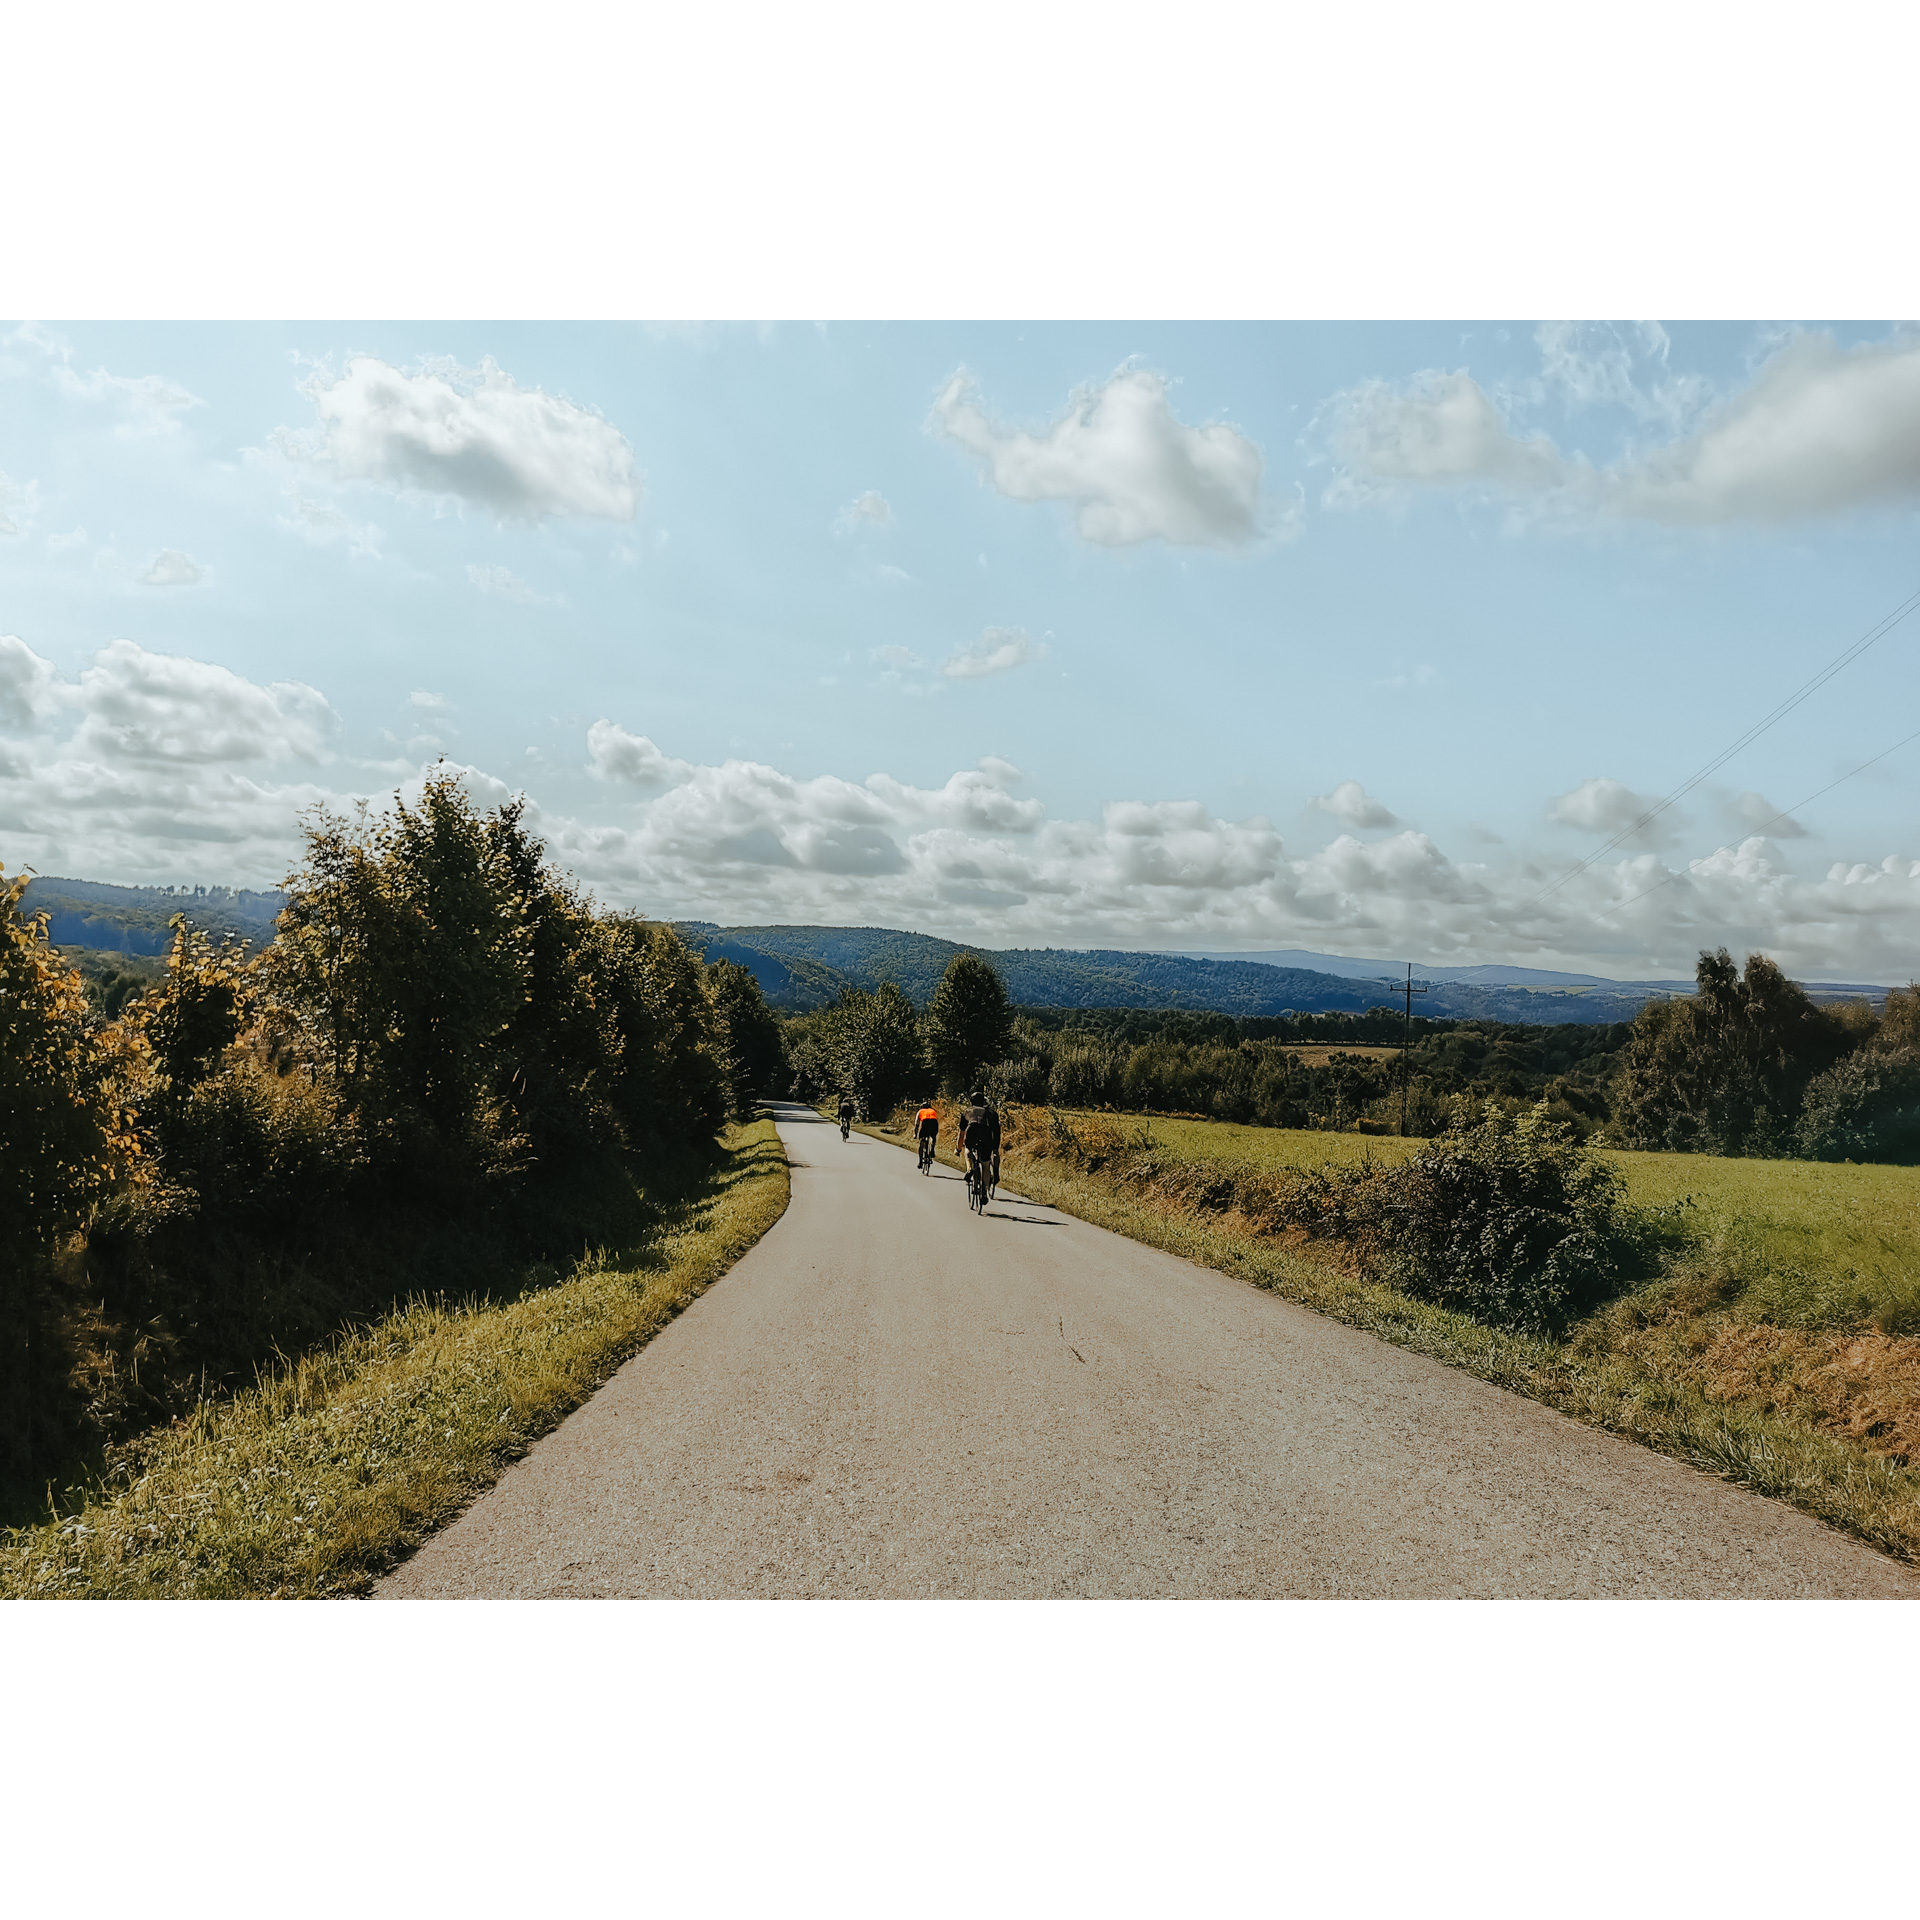 5 rowerzystów w strojach kolarskich jadących z górki drogą asfaltową wśród zielonych łąk i drzew, w tle wzgórza i błękitne niebo oraz chmury